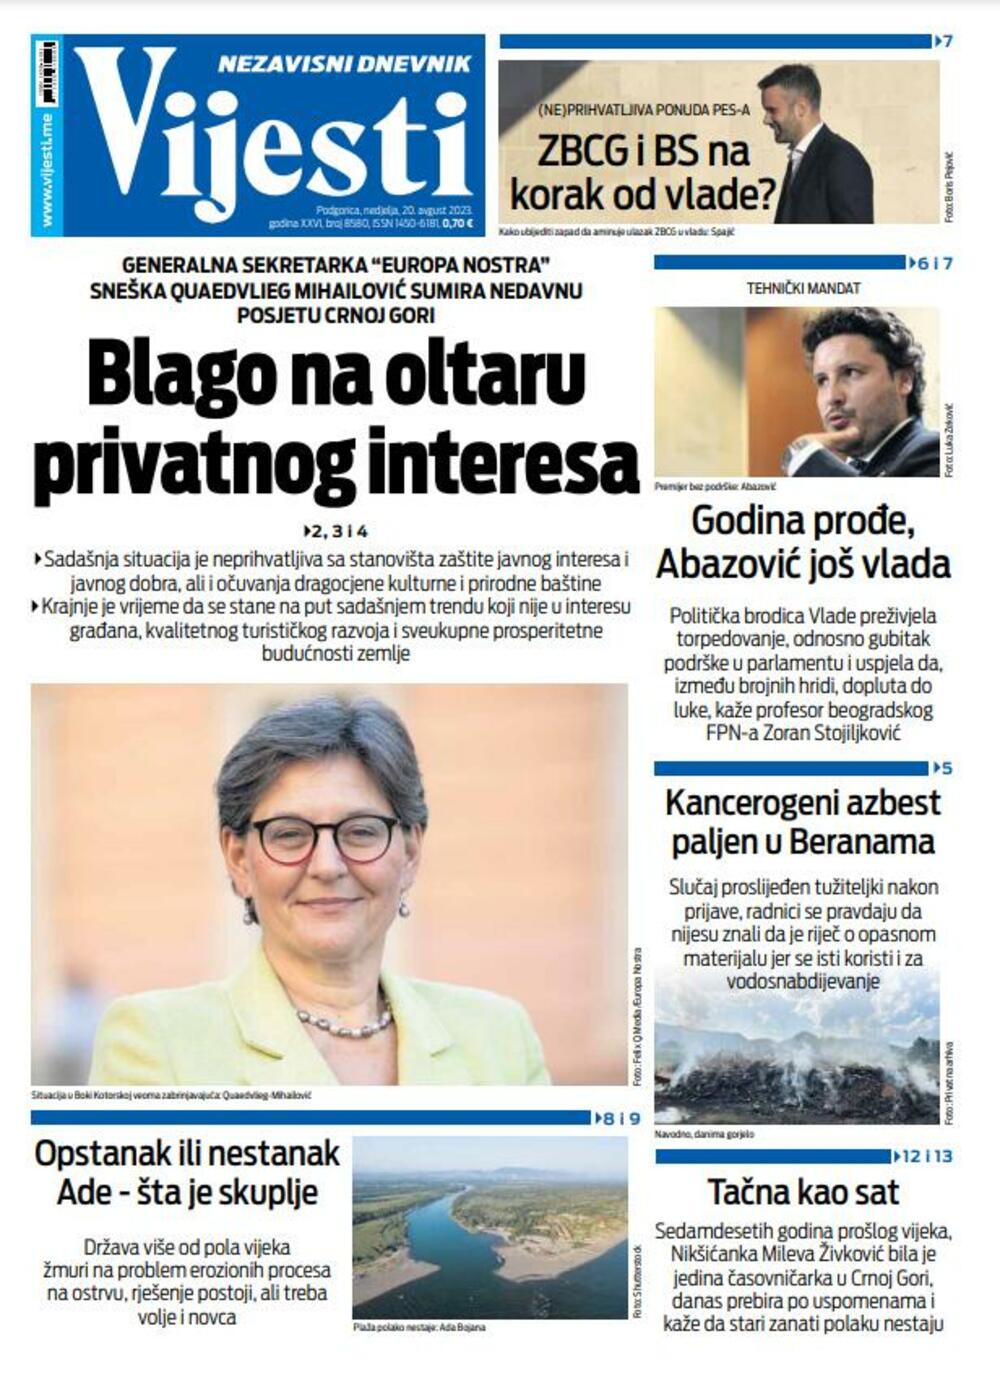 Naslovna strana "Vijesti" za 20. avgust 2023., Foto: Vijesti